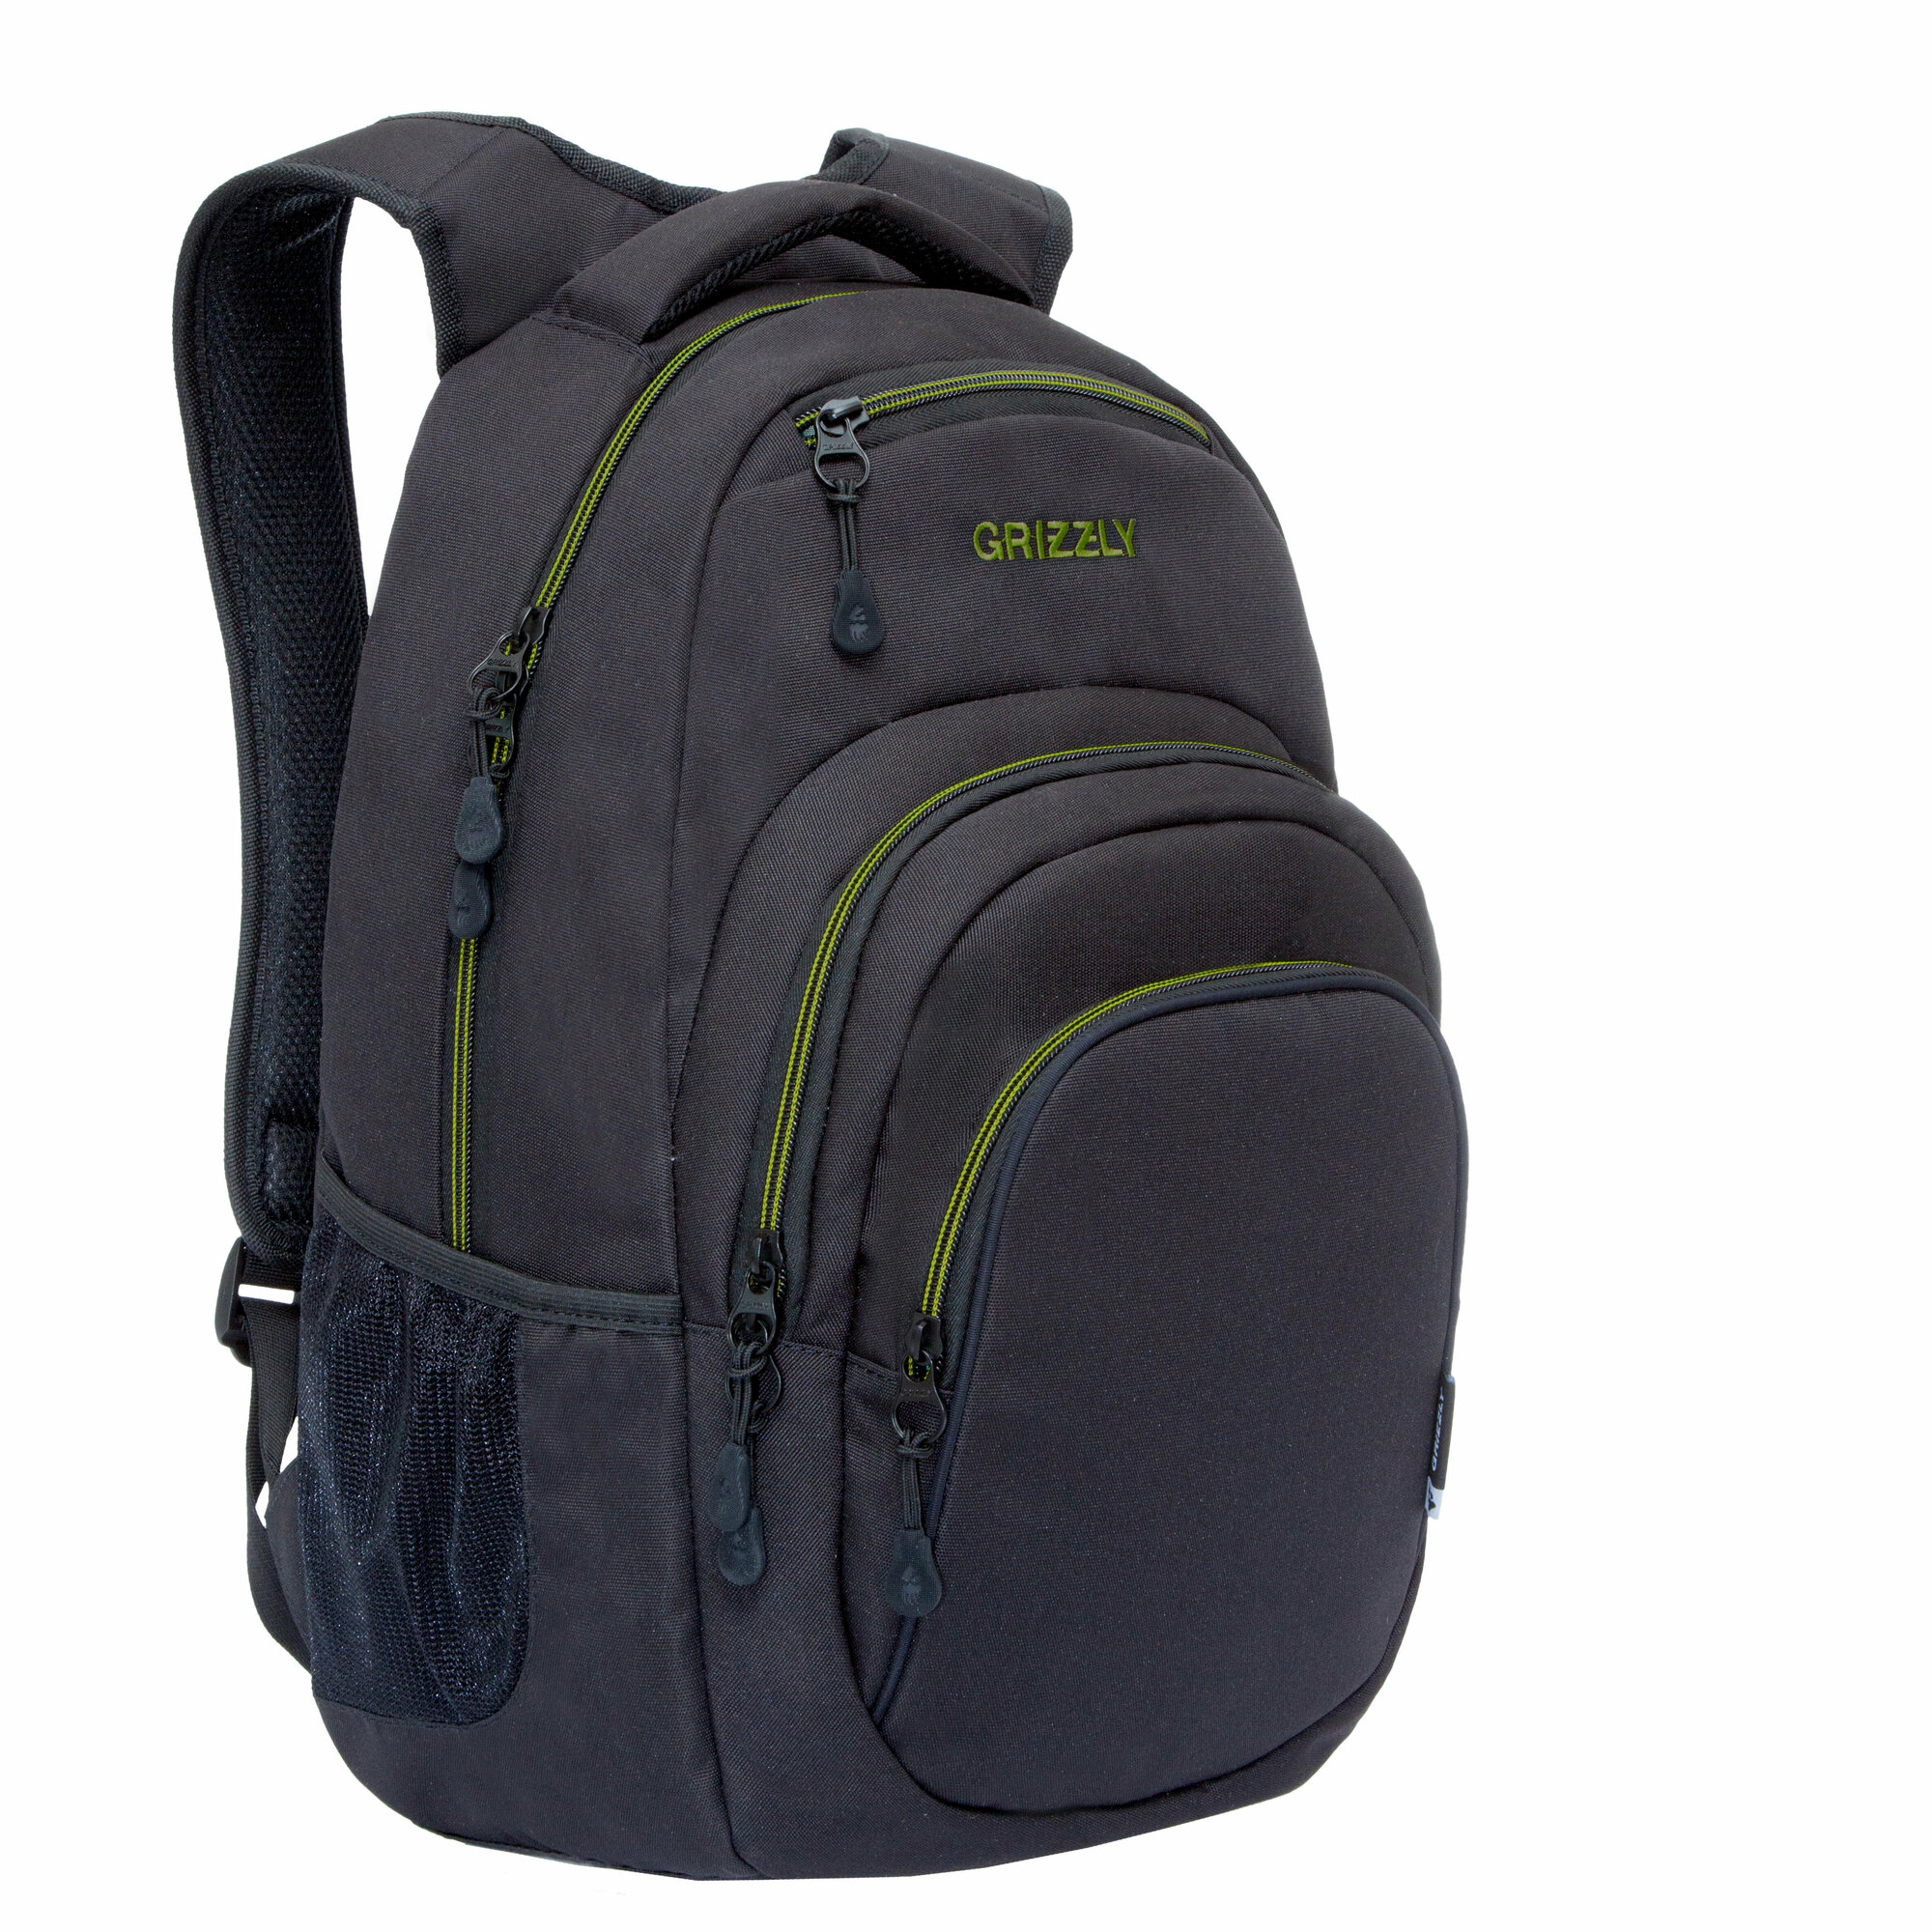 Рюкзак универсальный GRIZZLY с карманом для ноутбука 13" и одним отделением, мужской RQ-003-31/3